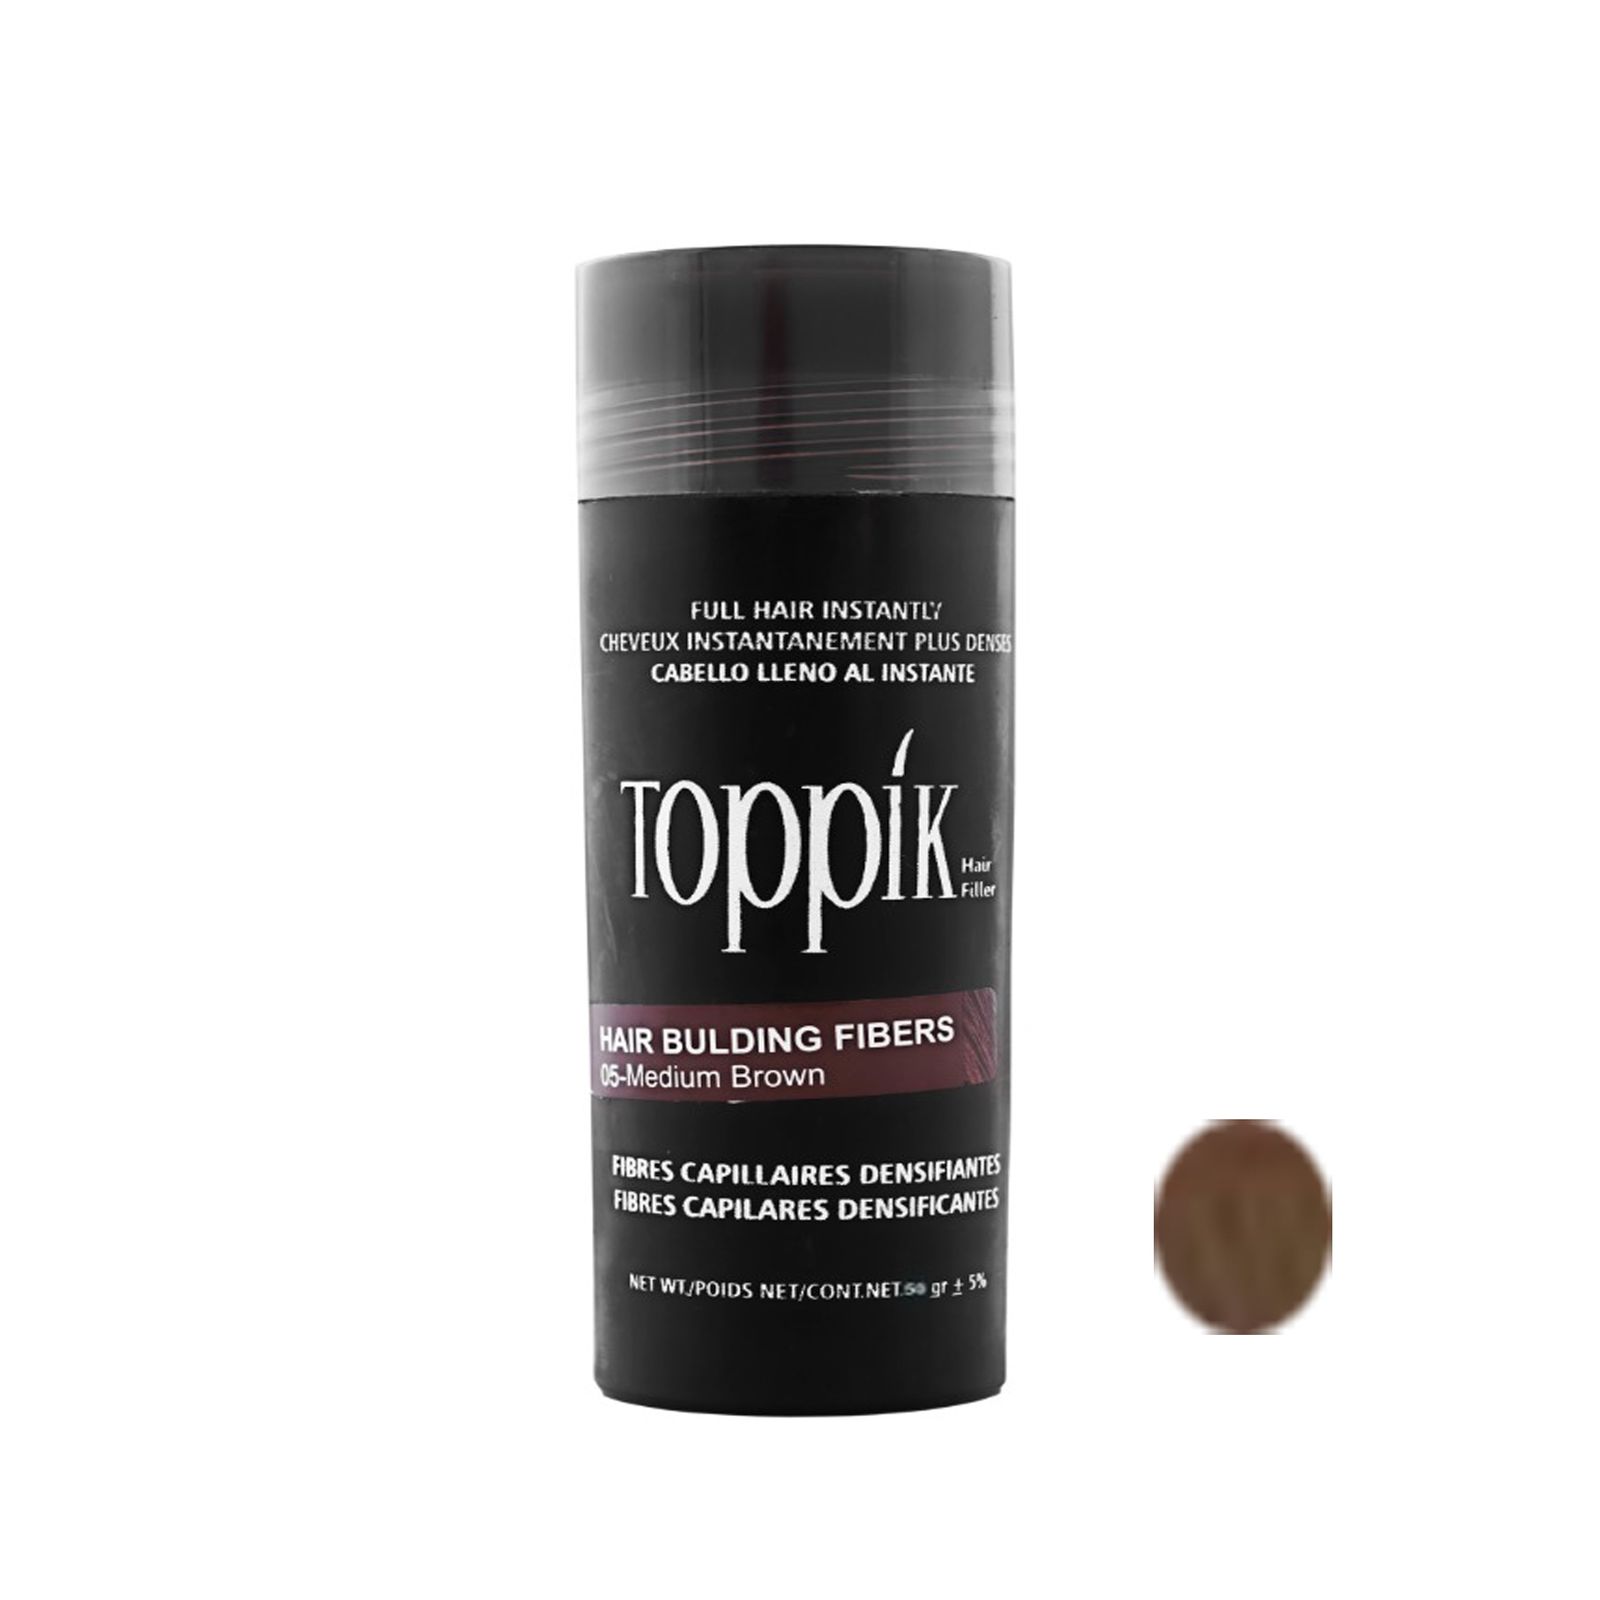 پودر پرپشت کننده مو تاپیک هیر فیلر کد 05 وزن 50 گرم رنگ قهوه ای متوسط -  - 1